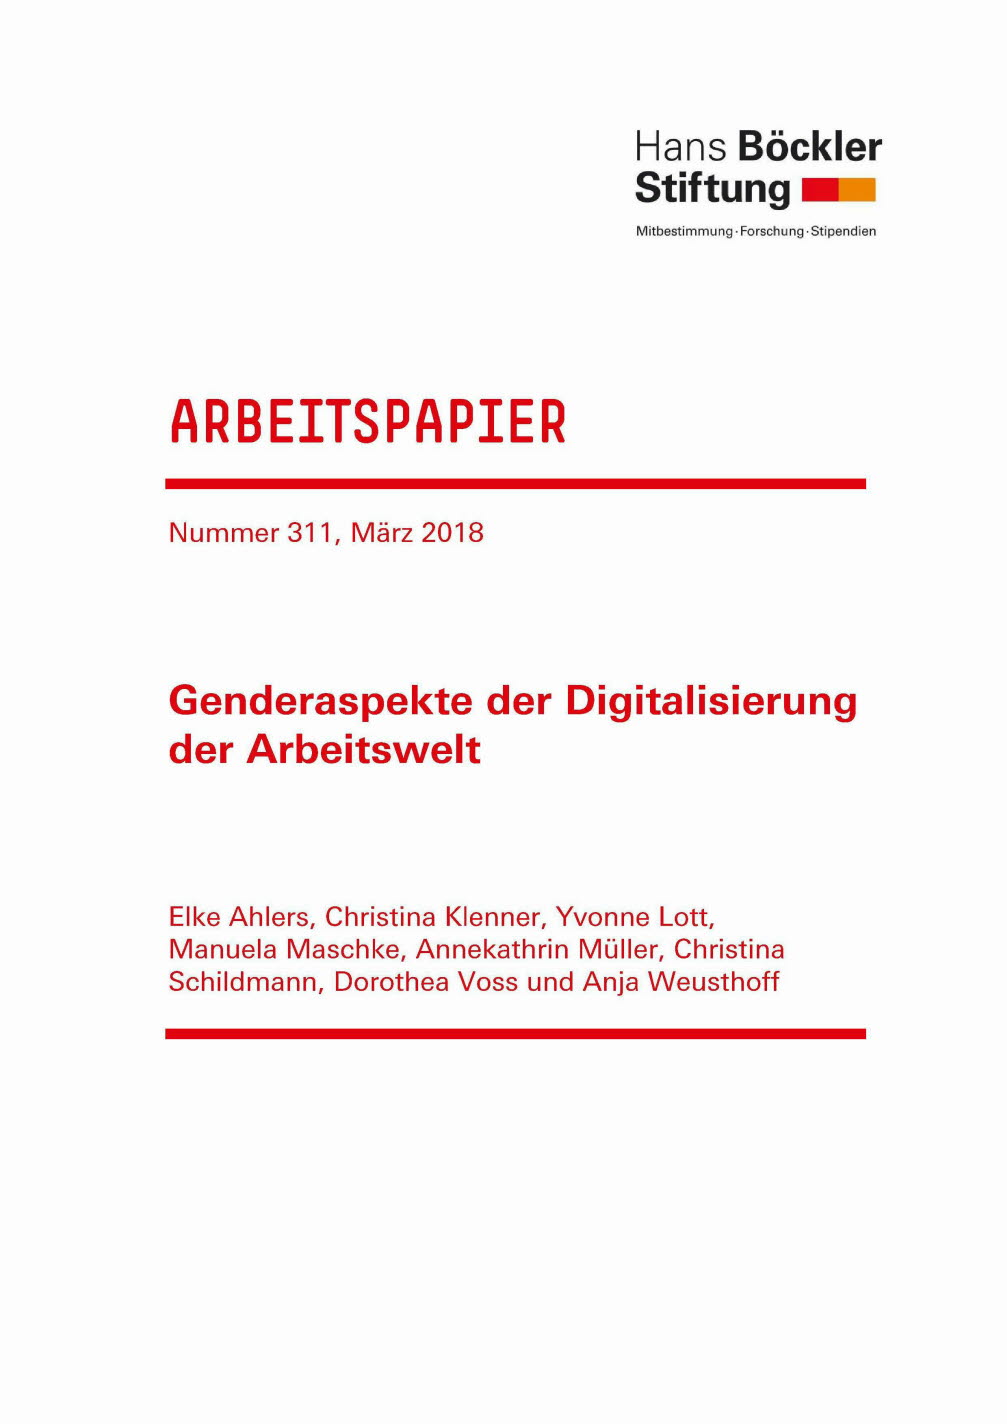 Genderaspekte der Digitalisierung der Arbeitswelt